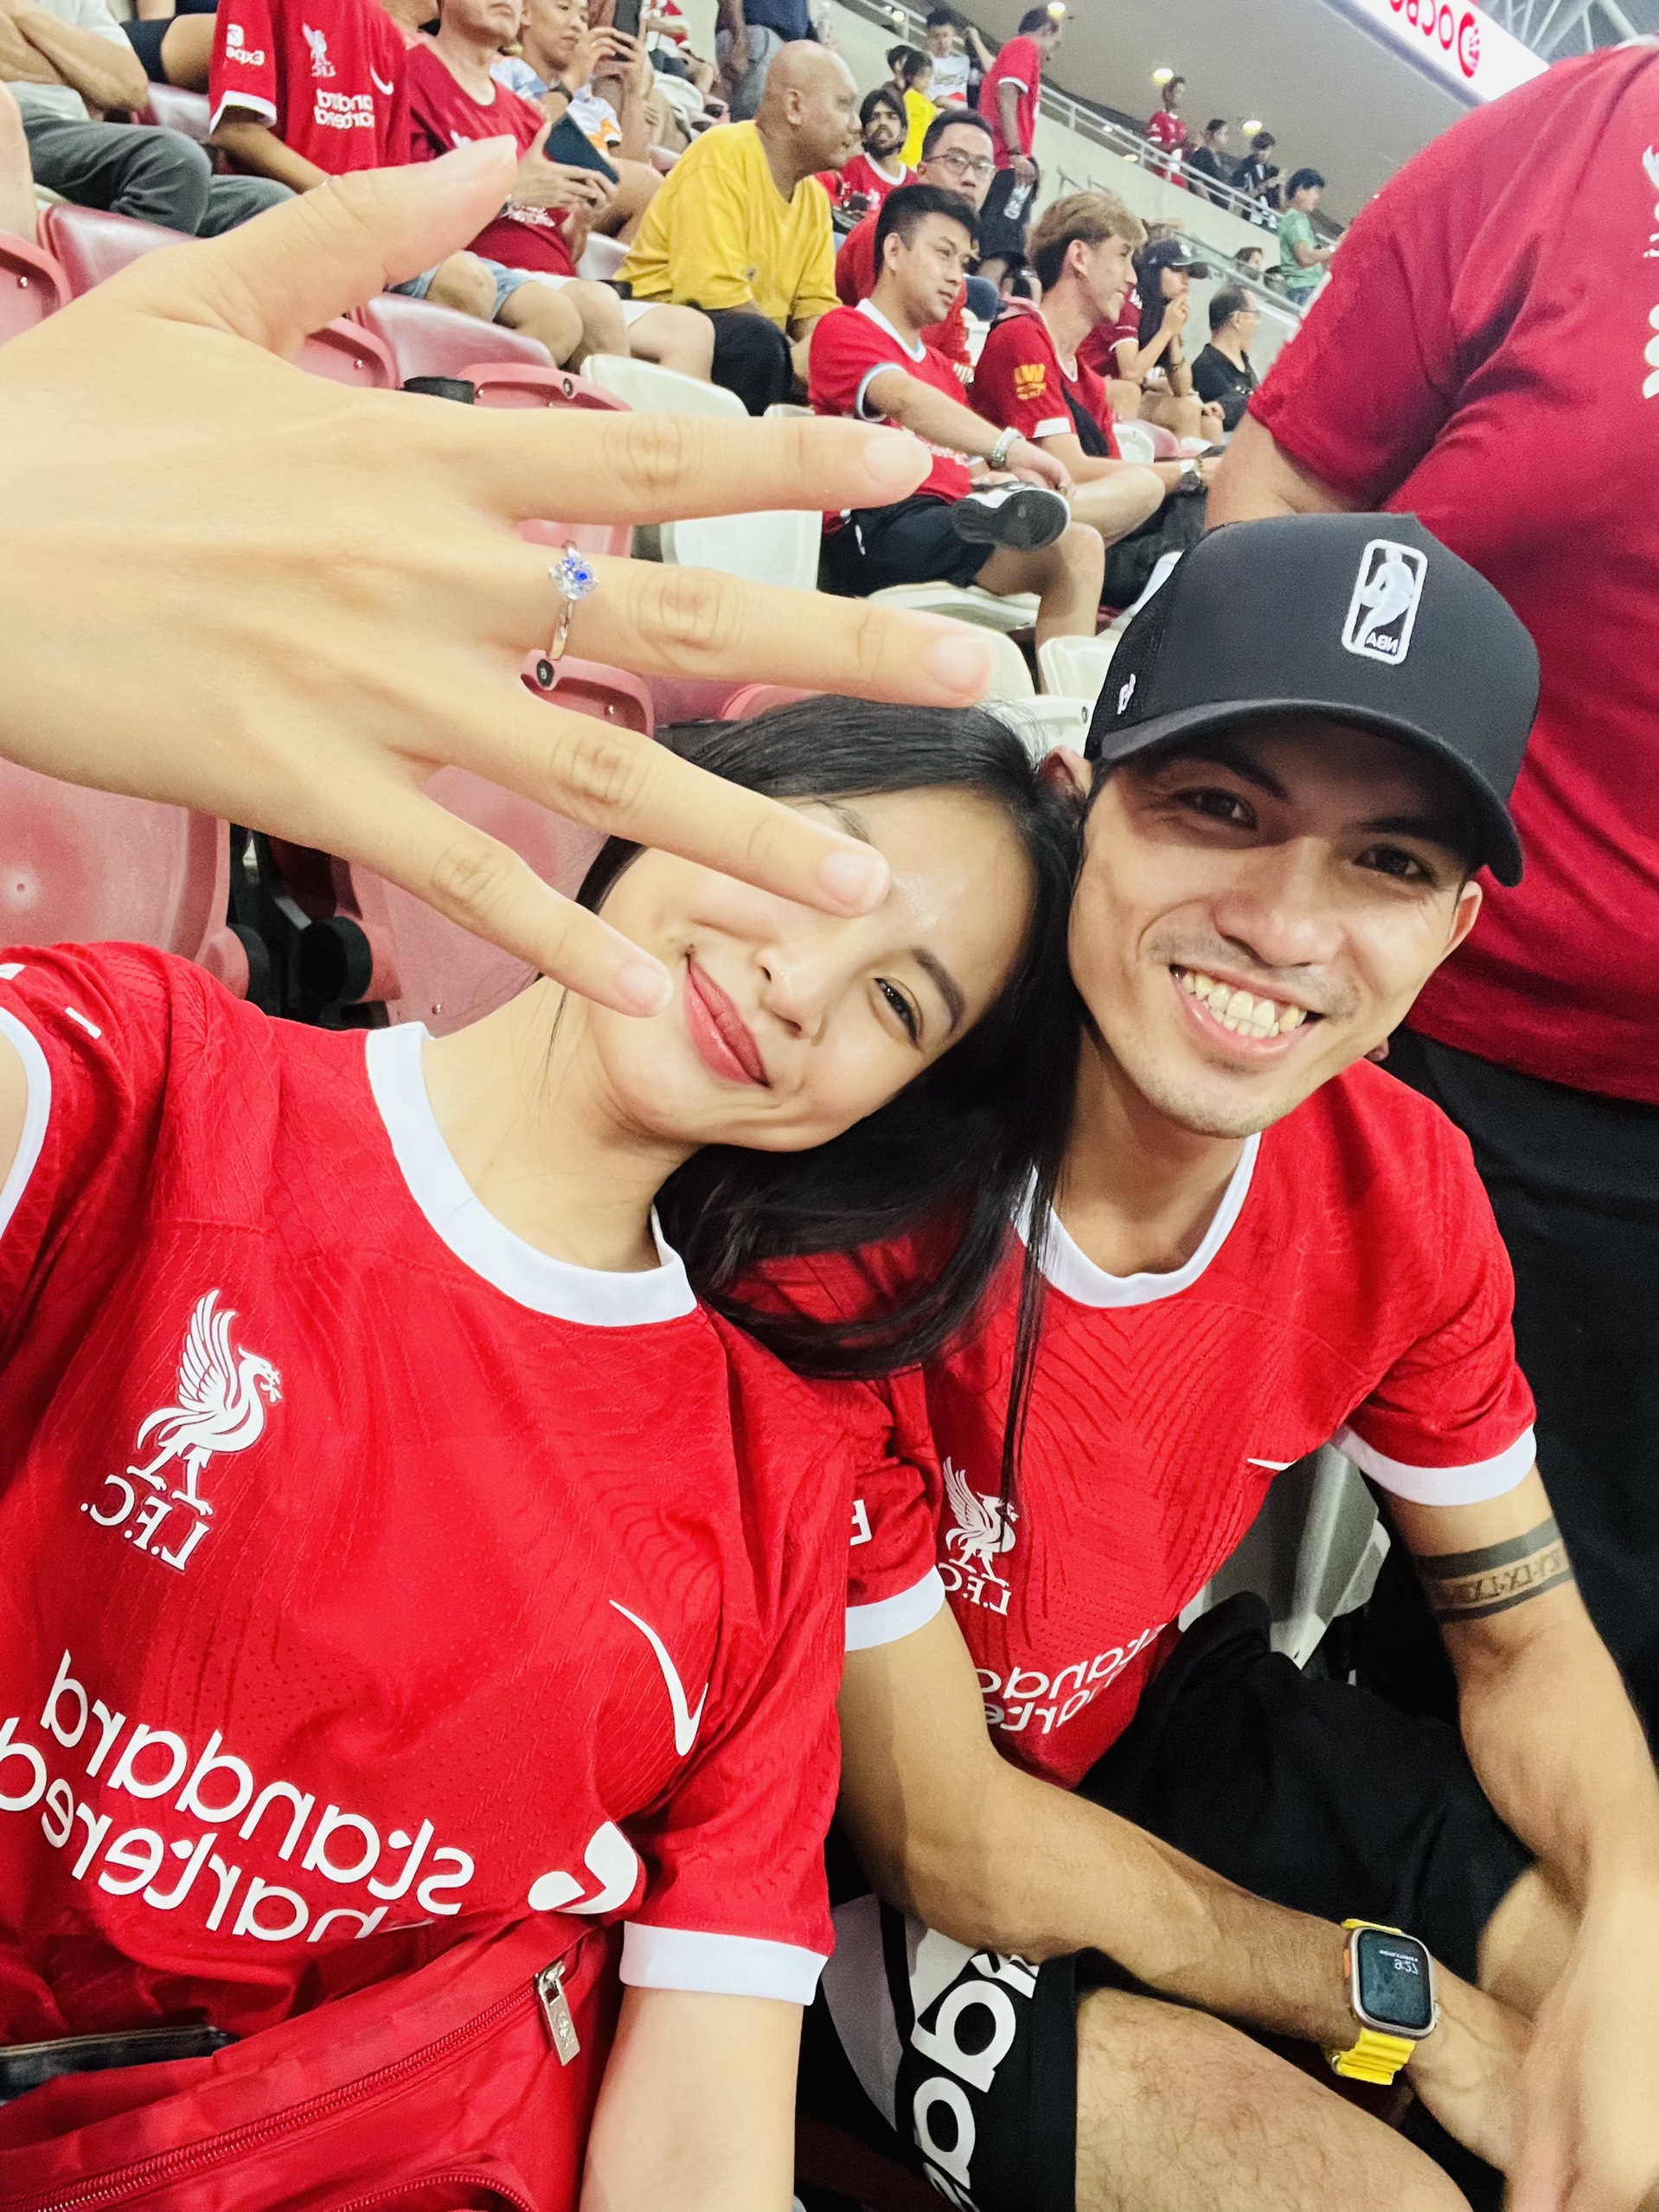 Cặp đôi Việt Nam cầu hôn giữa trận cầu Liverpool - Bayern Munich được lên báo Singapore - Ảnh 2.